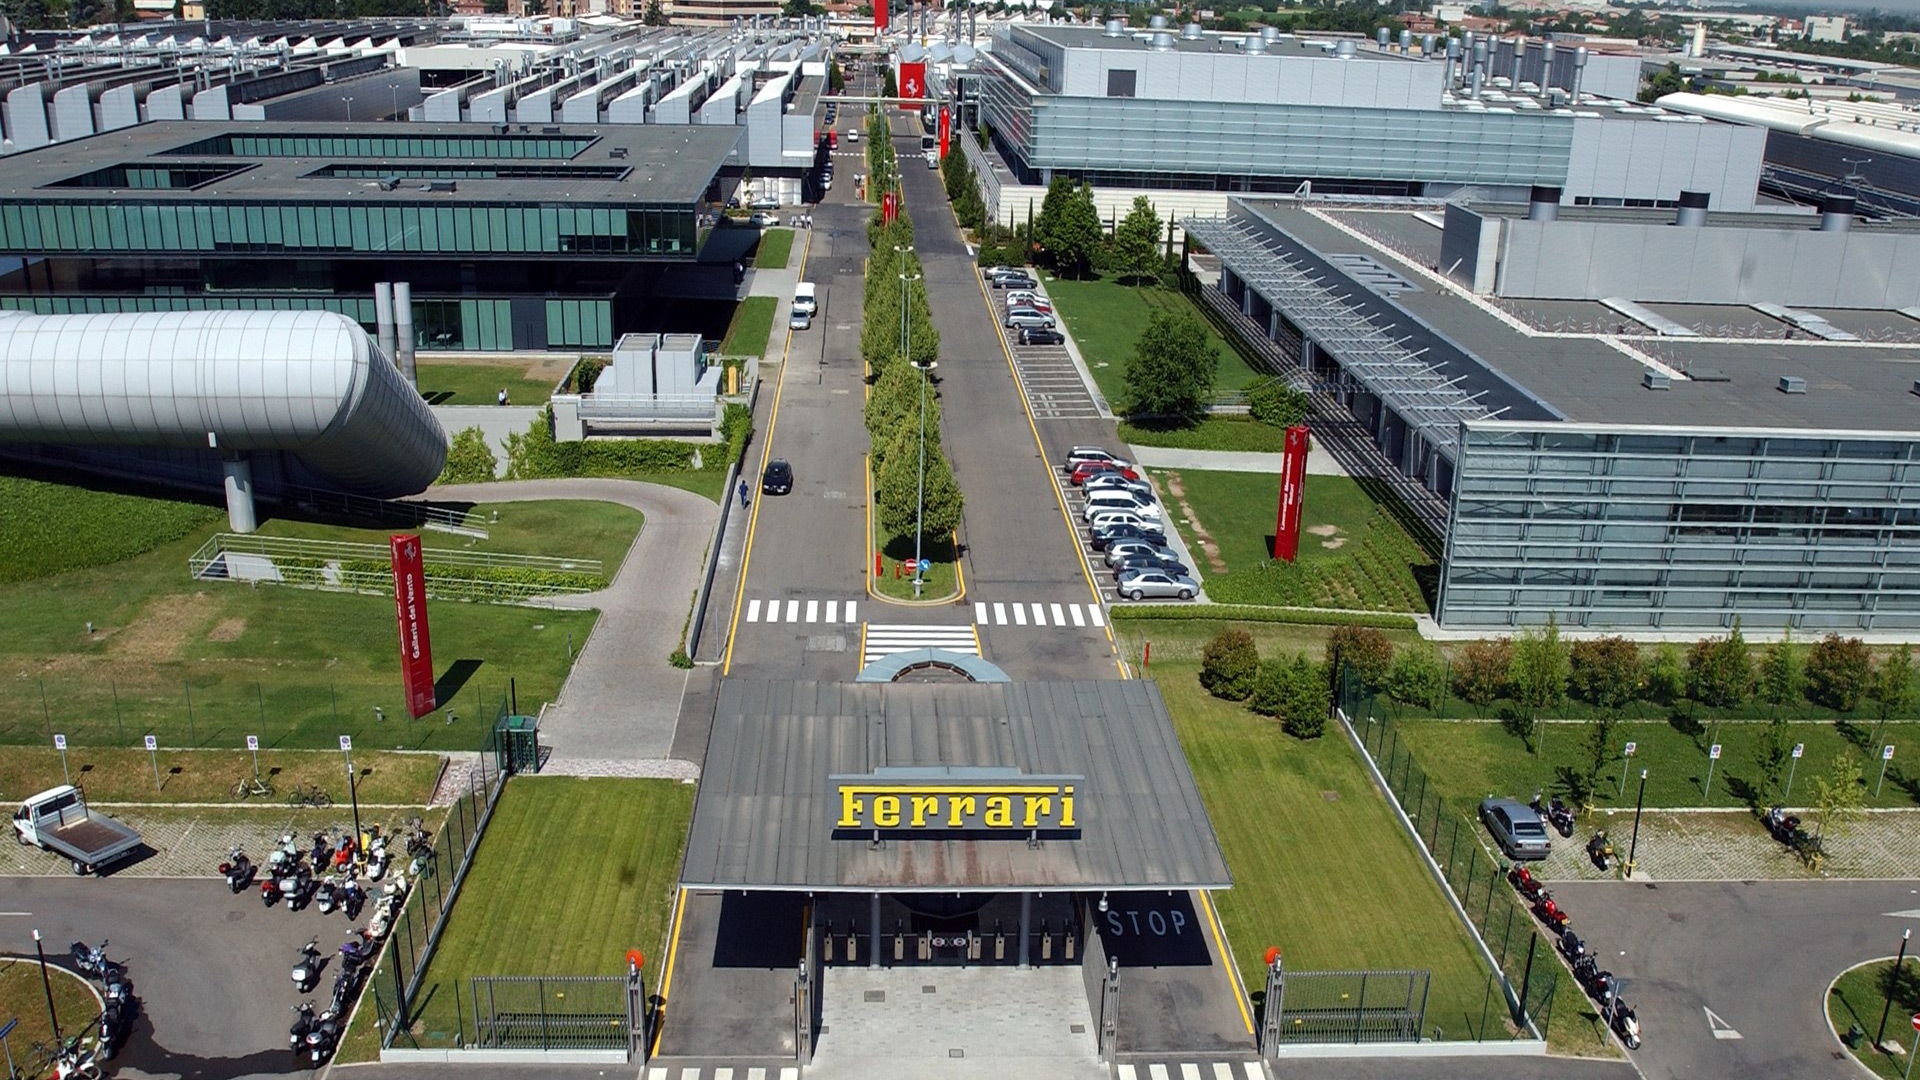 Ferrari plant in Maranello, Italy